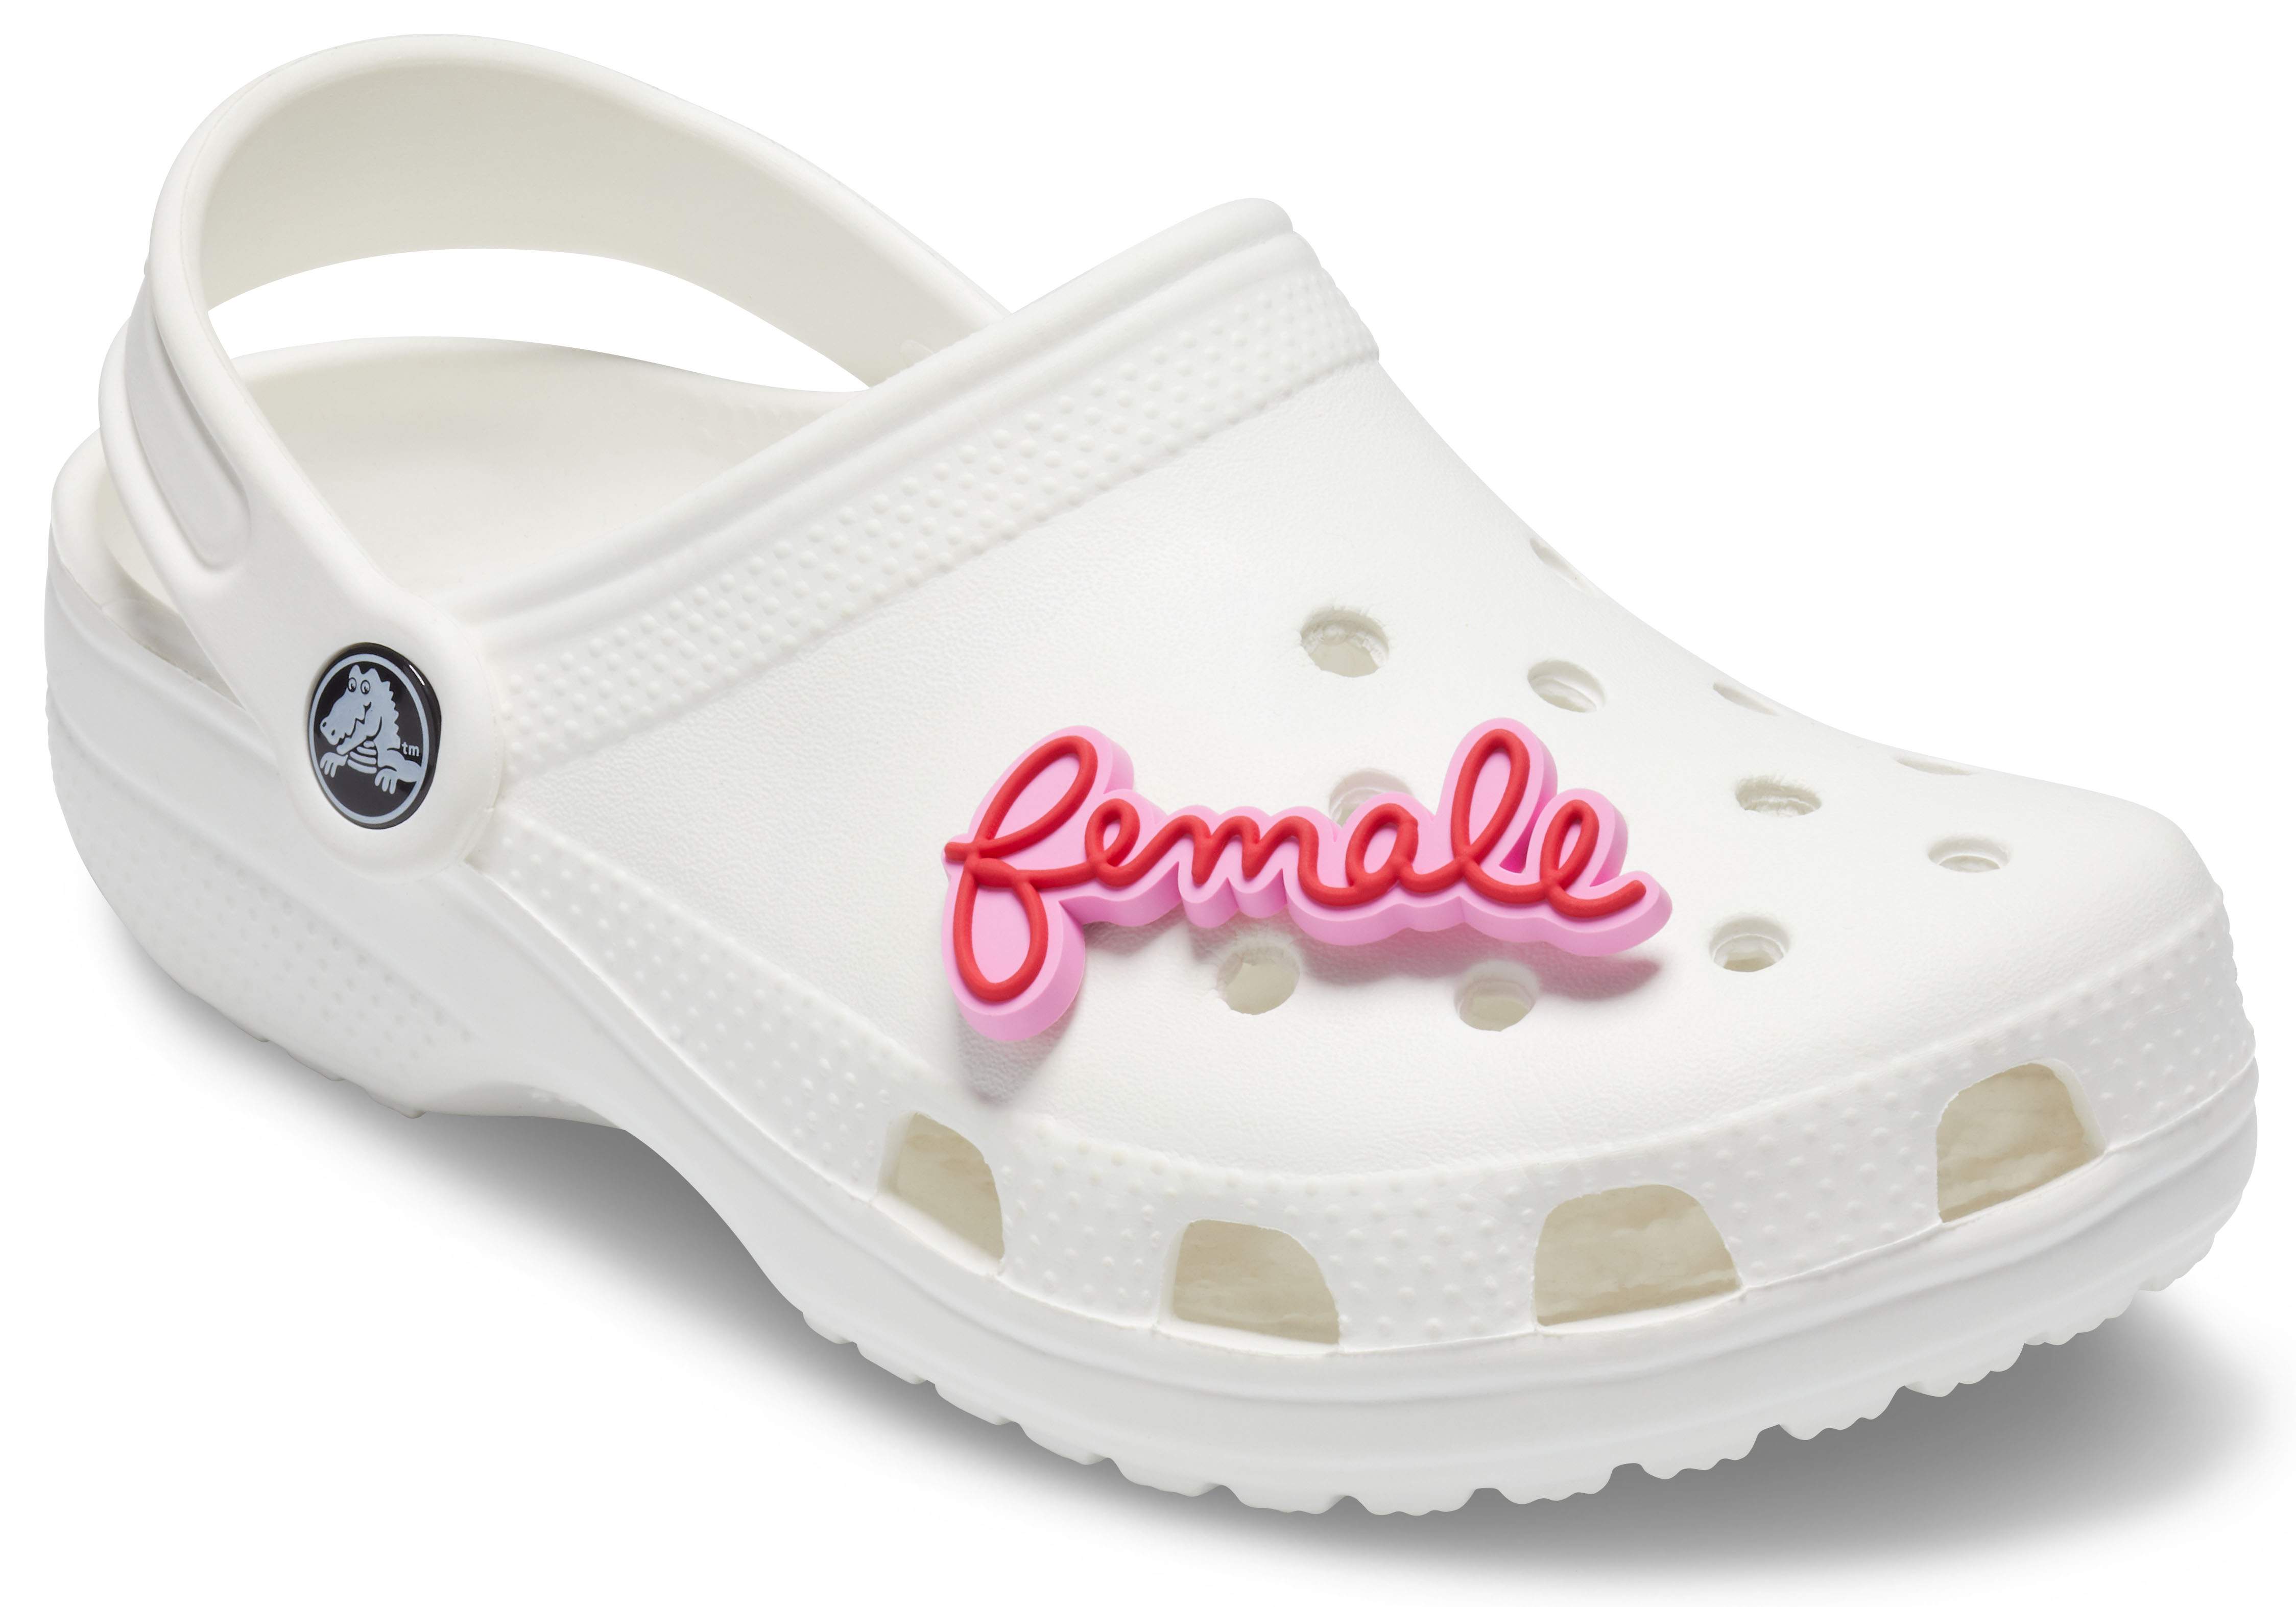 female crocs shoes